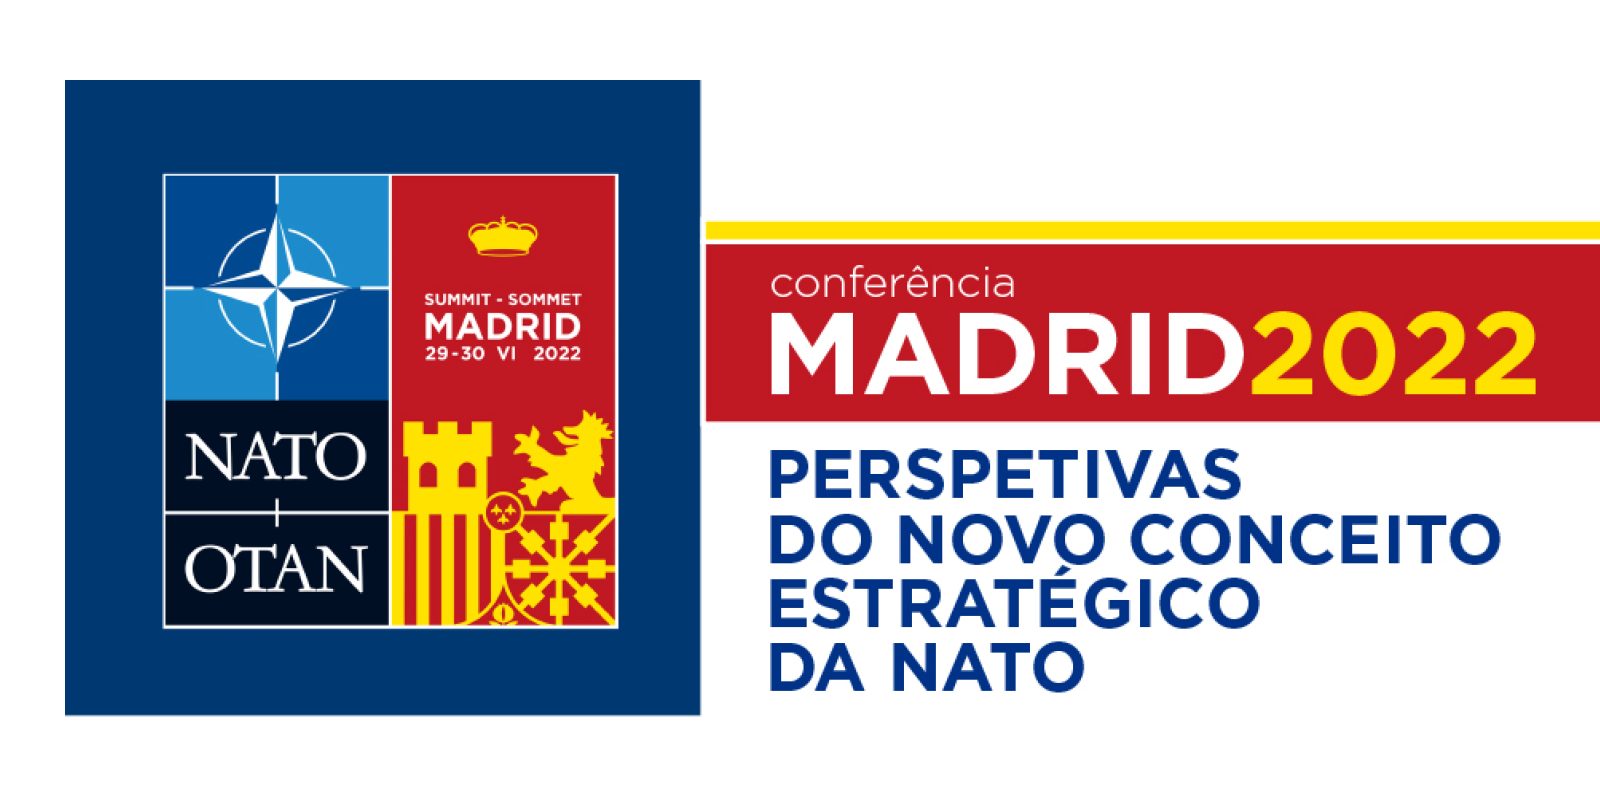 CONFERÊNCIA – MADRID 2022: PERSPETIVAS DO NOVO CONCEITO ESTRATÉGICO DA NATO